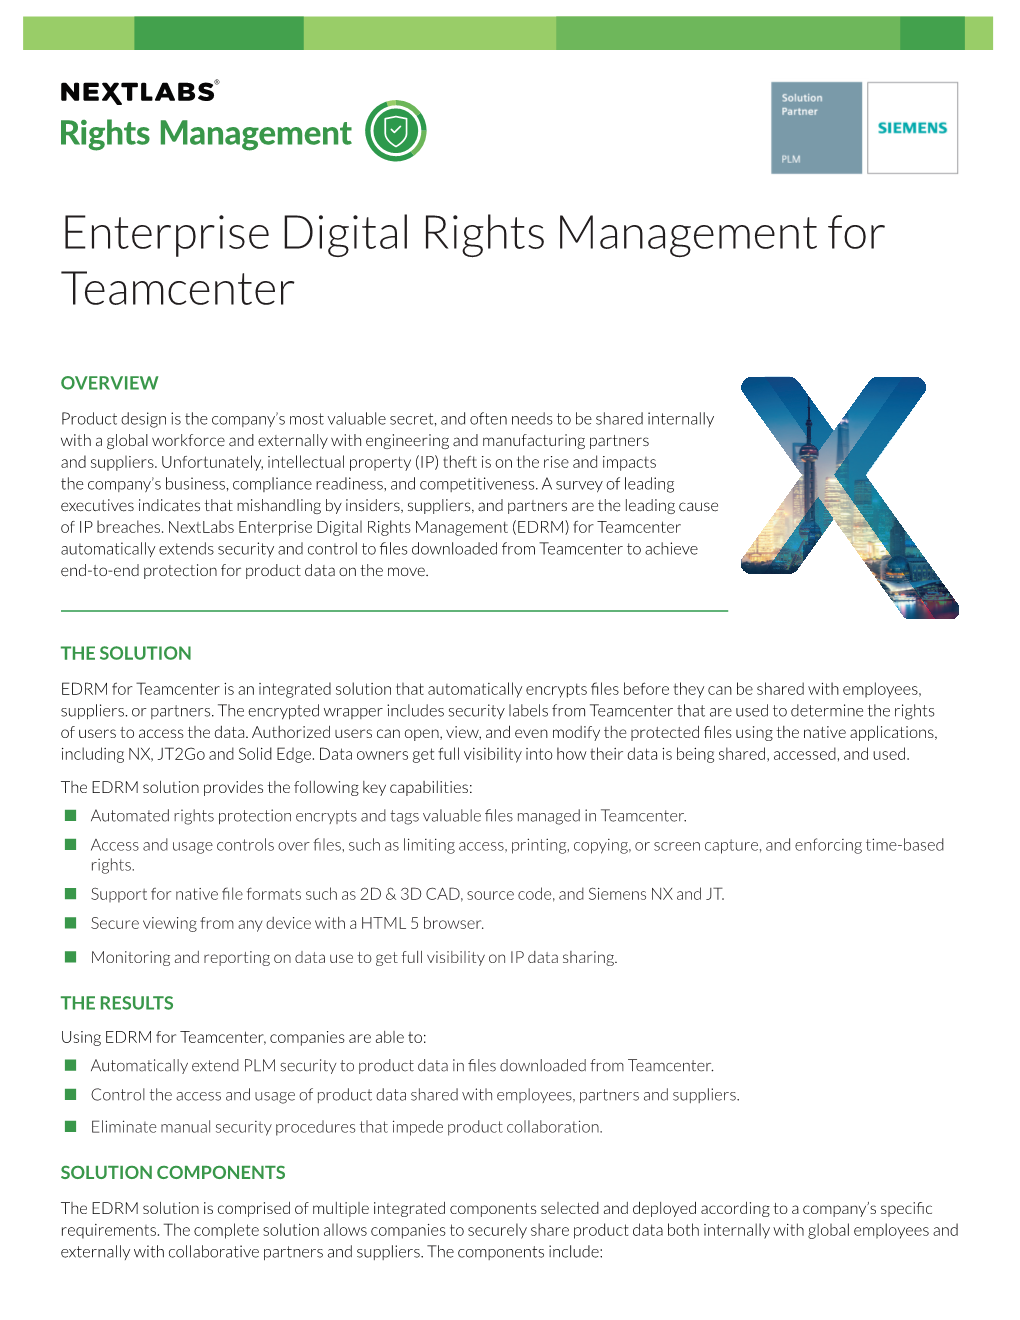 Enterprise Digital Rights Management for Teamcenter